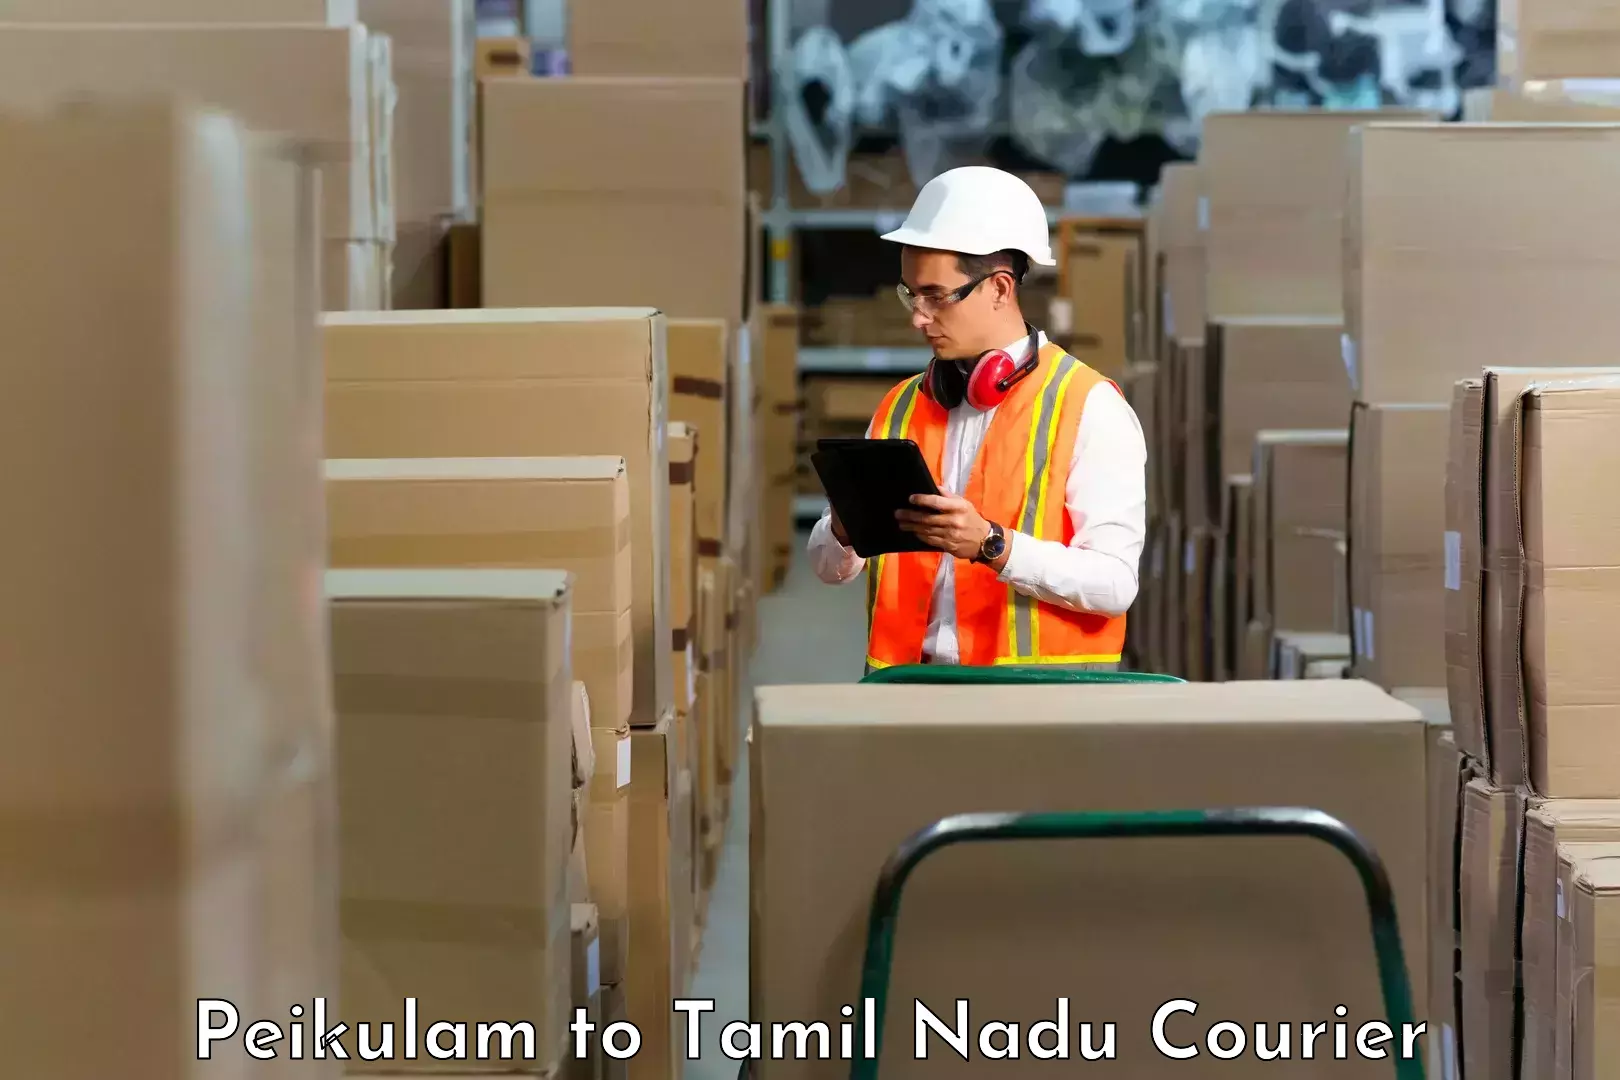 Advanced shipping services Peikulam to Tirunelveli